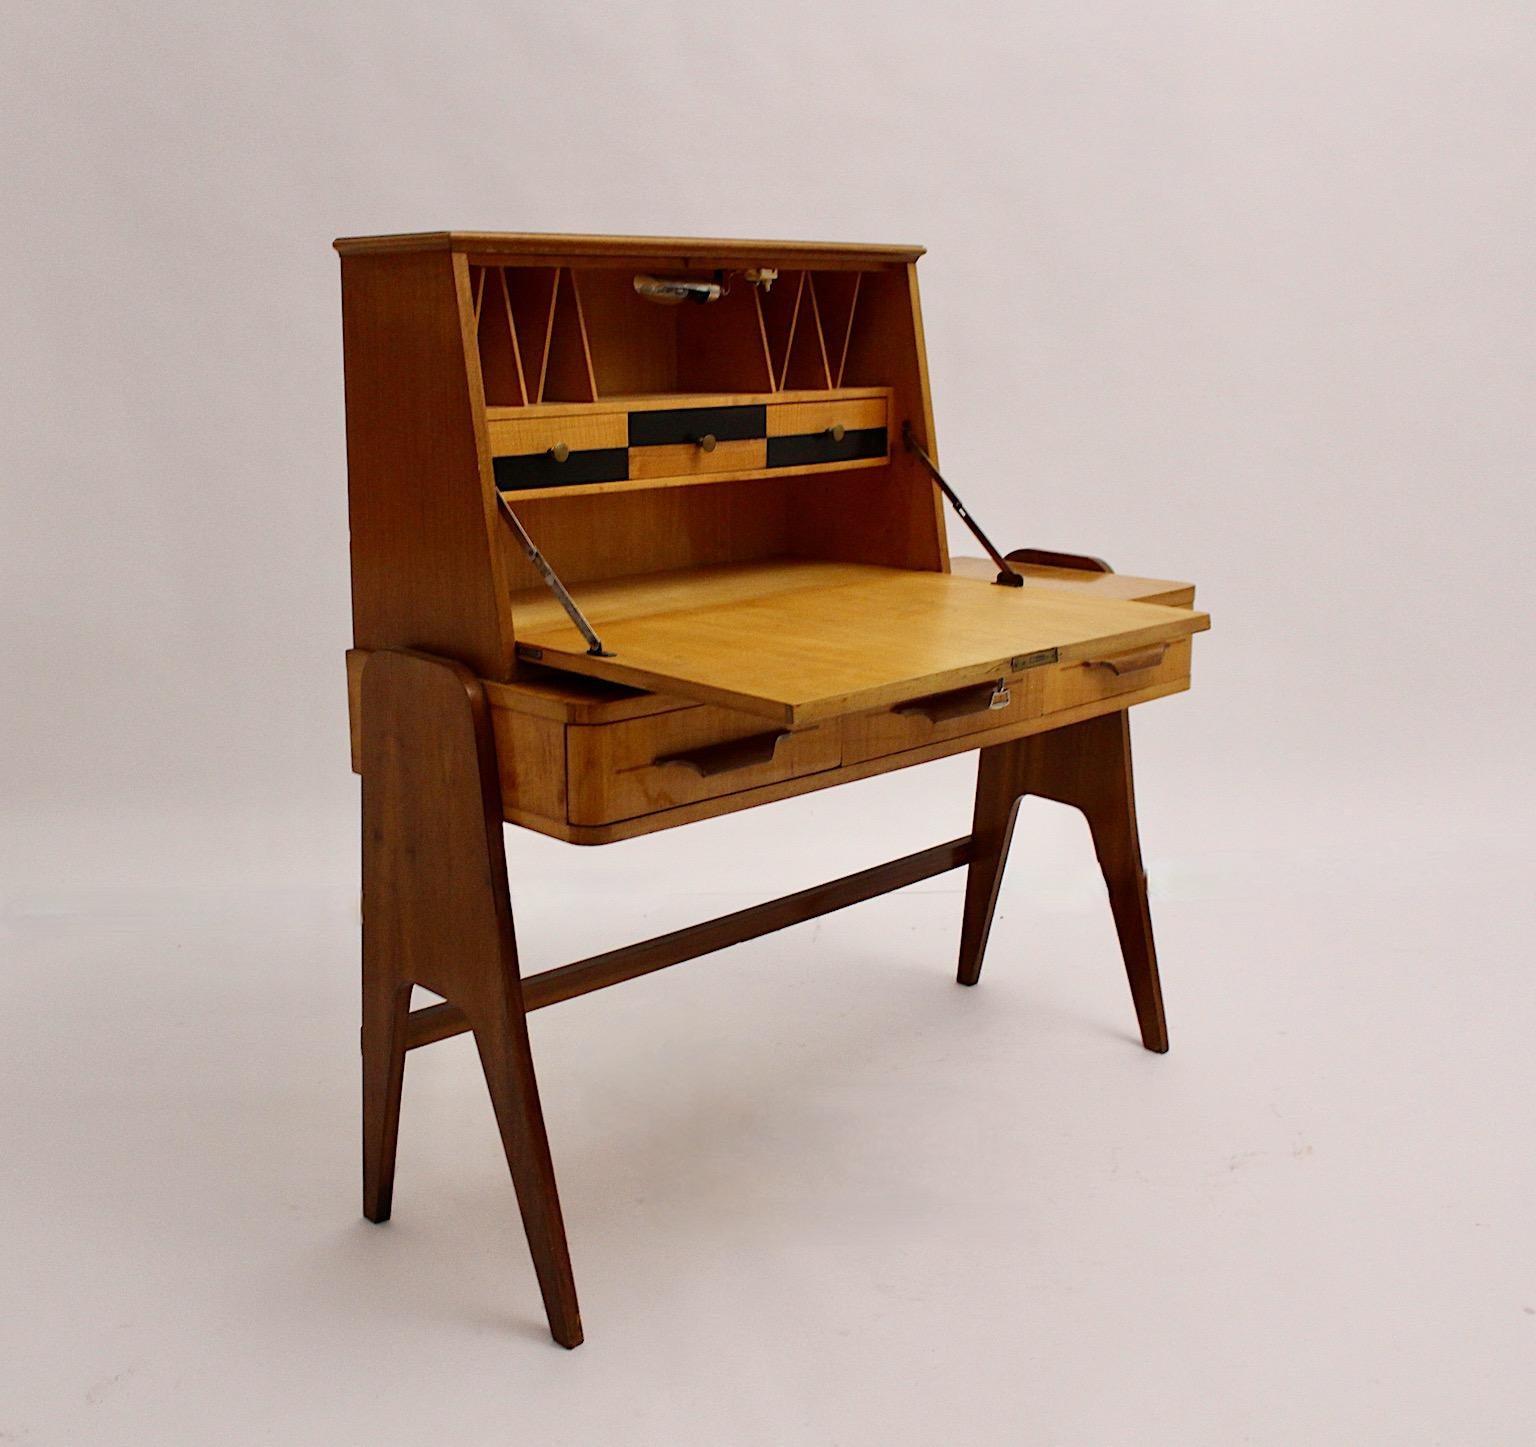 Mid-Century Modern Vintage Sekretär Schreibtisch Bureau Ico Parisi Stil aus Nussbaum und Esche Furniere entworfen und hergestellt 1950er Jahre Italien. 
Der schöne Schreibtisch verfügt über drei geräumige Schubladen und eine Schreibtischplatte. Wenn